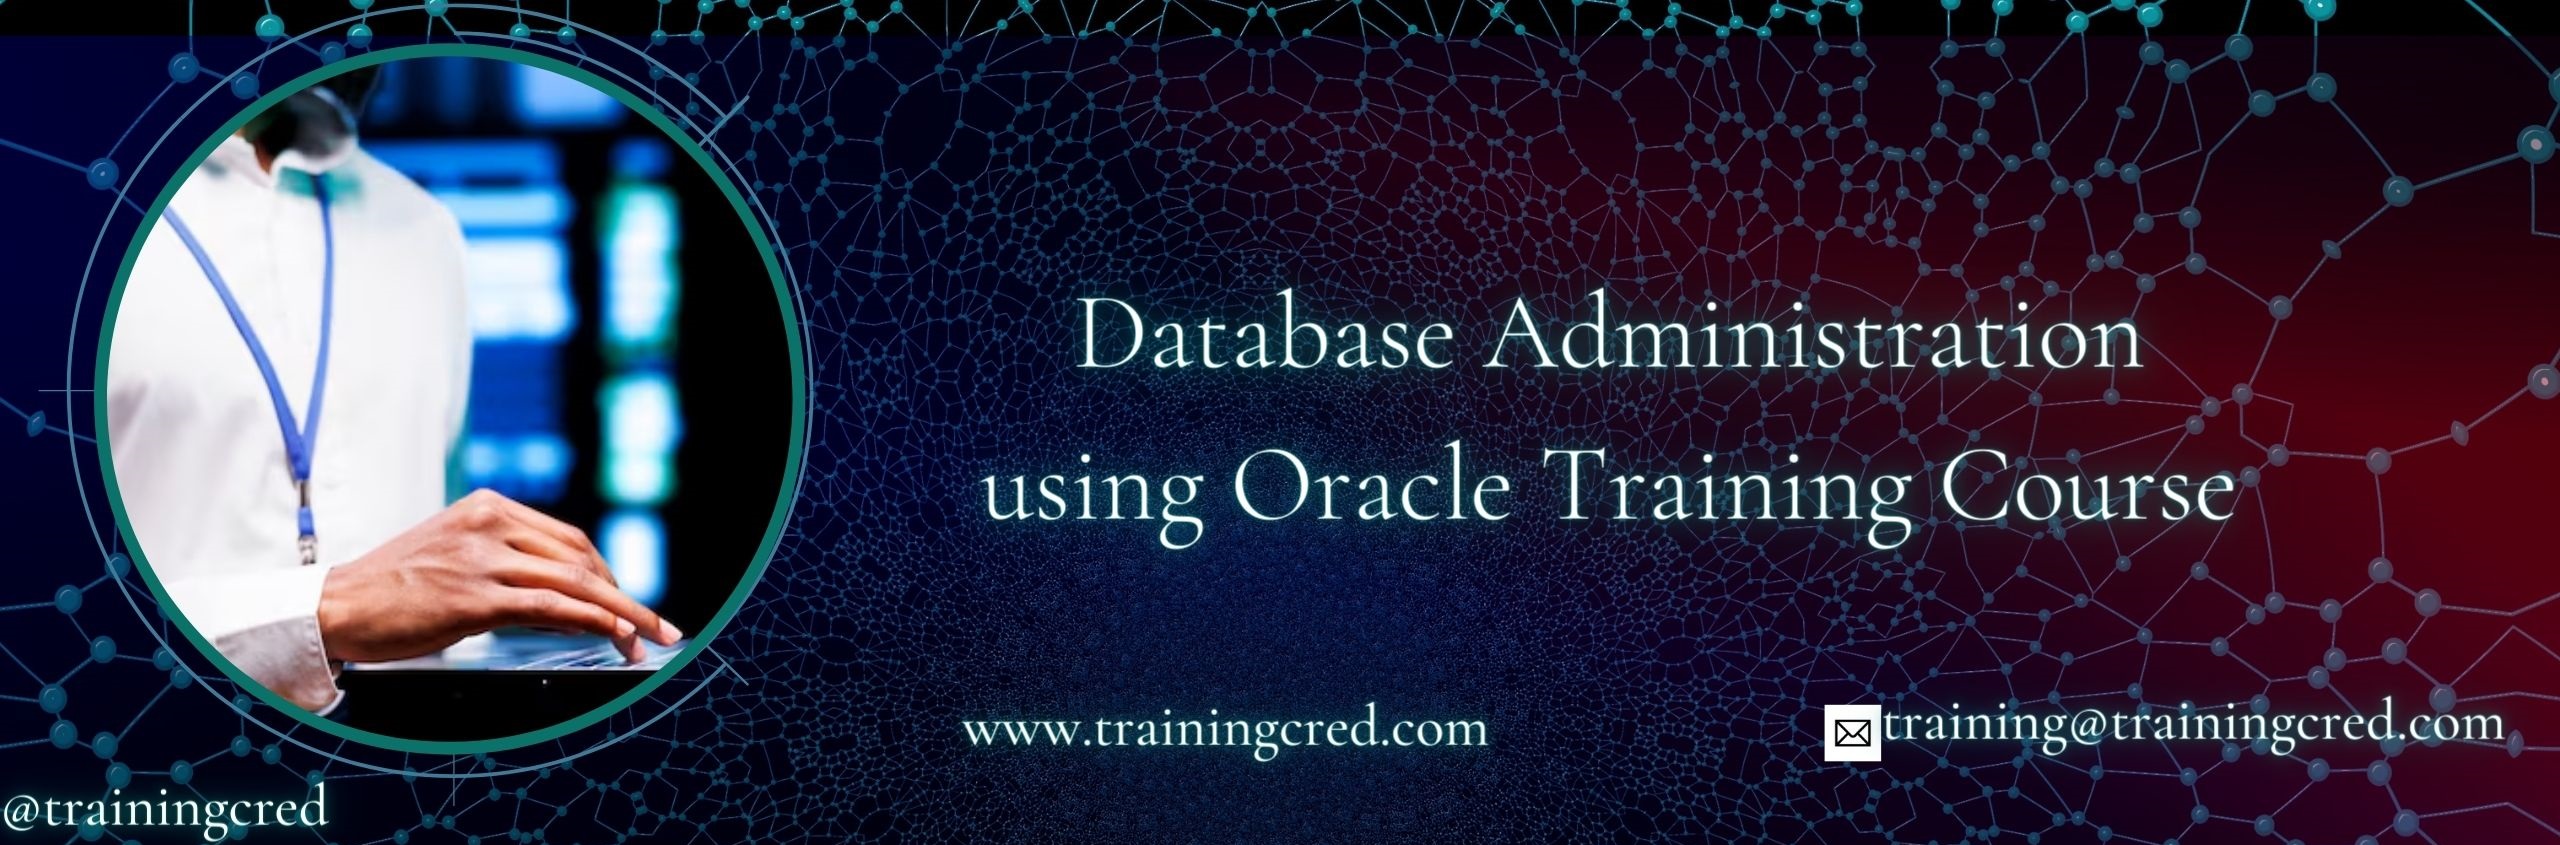 Database Administration using Oracle Training